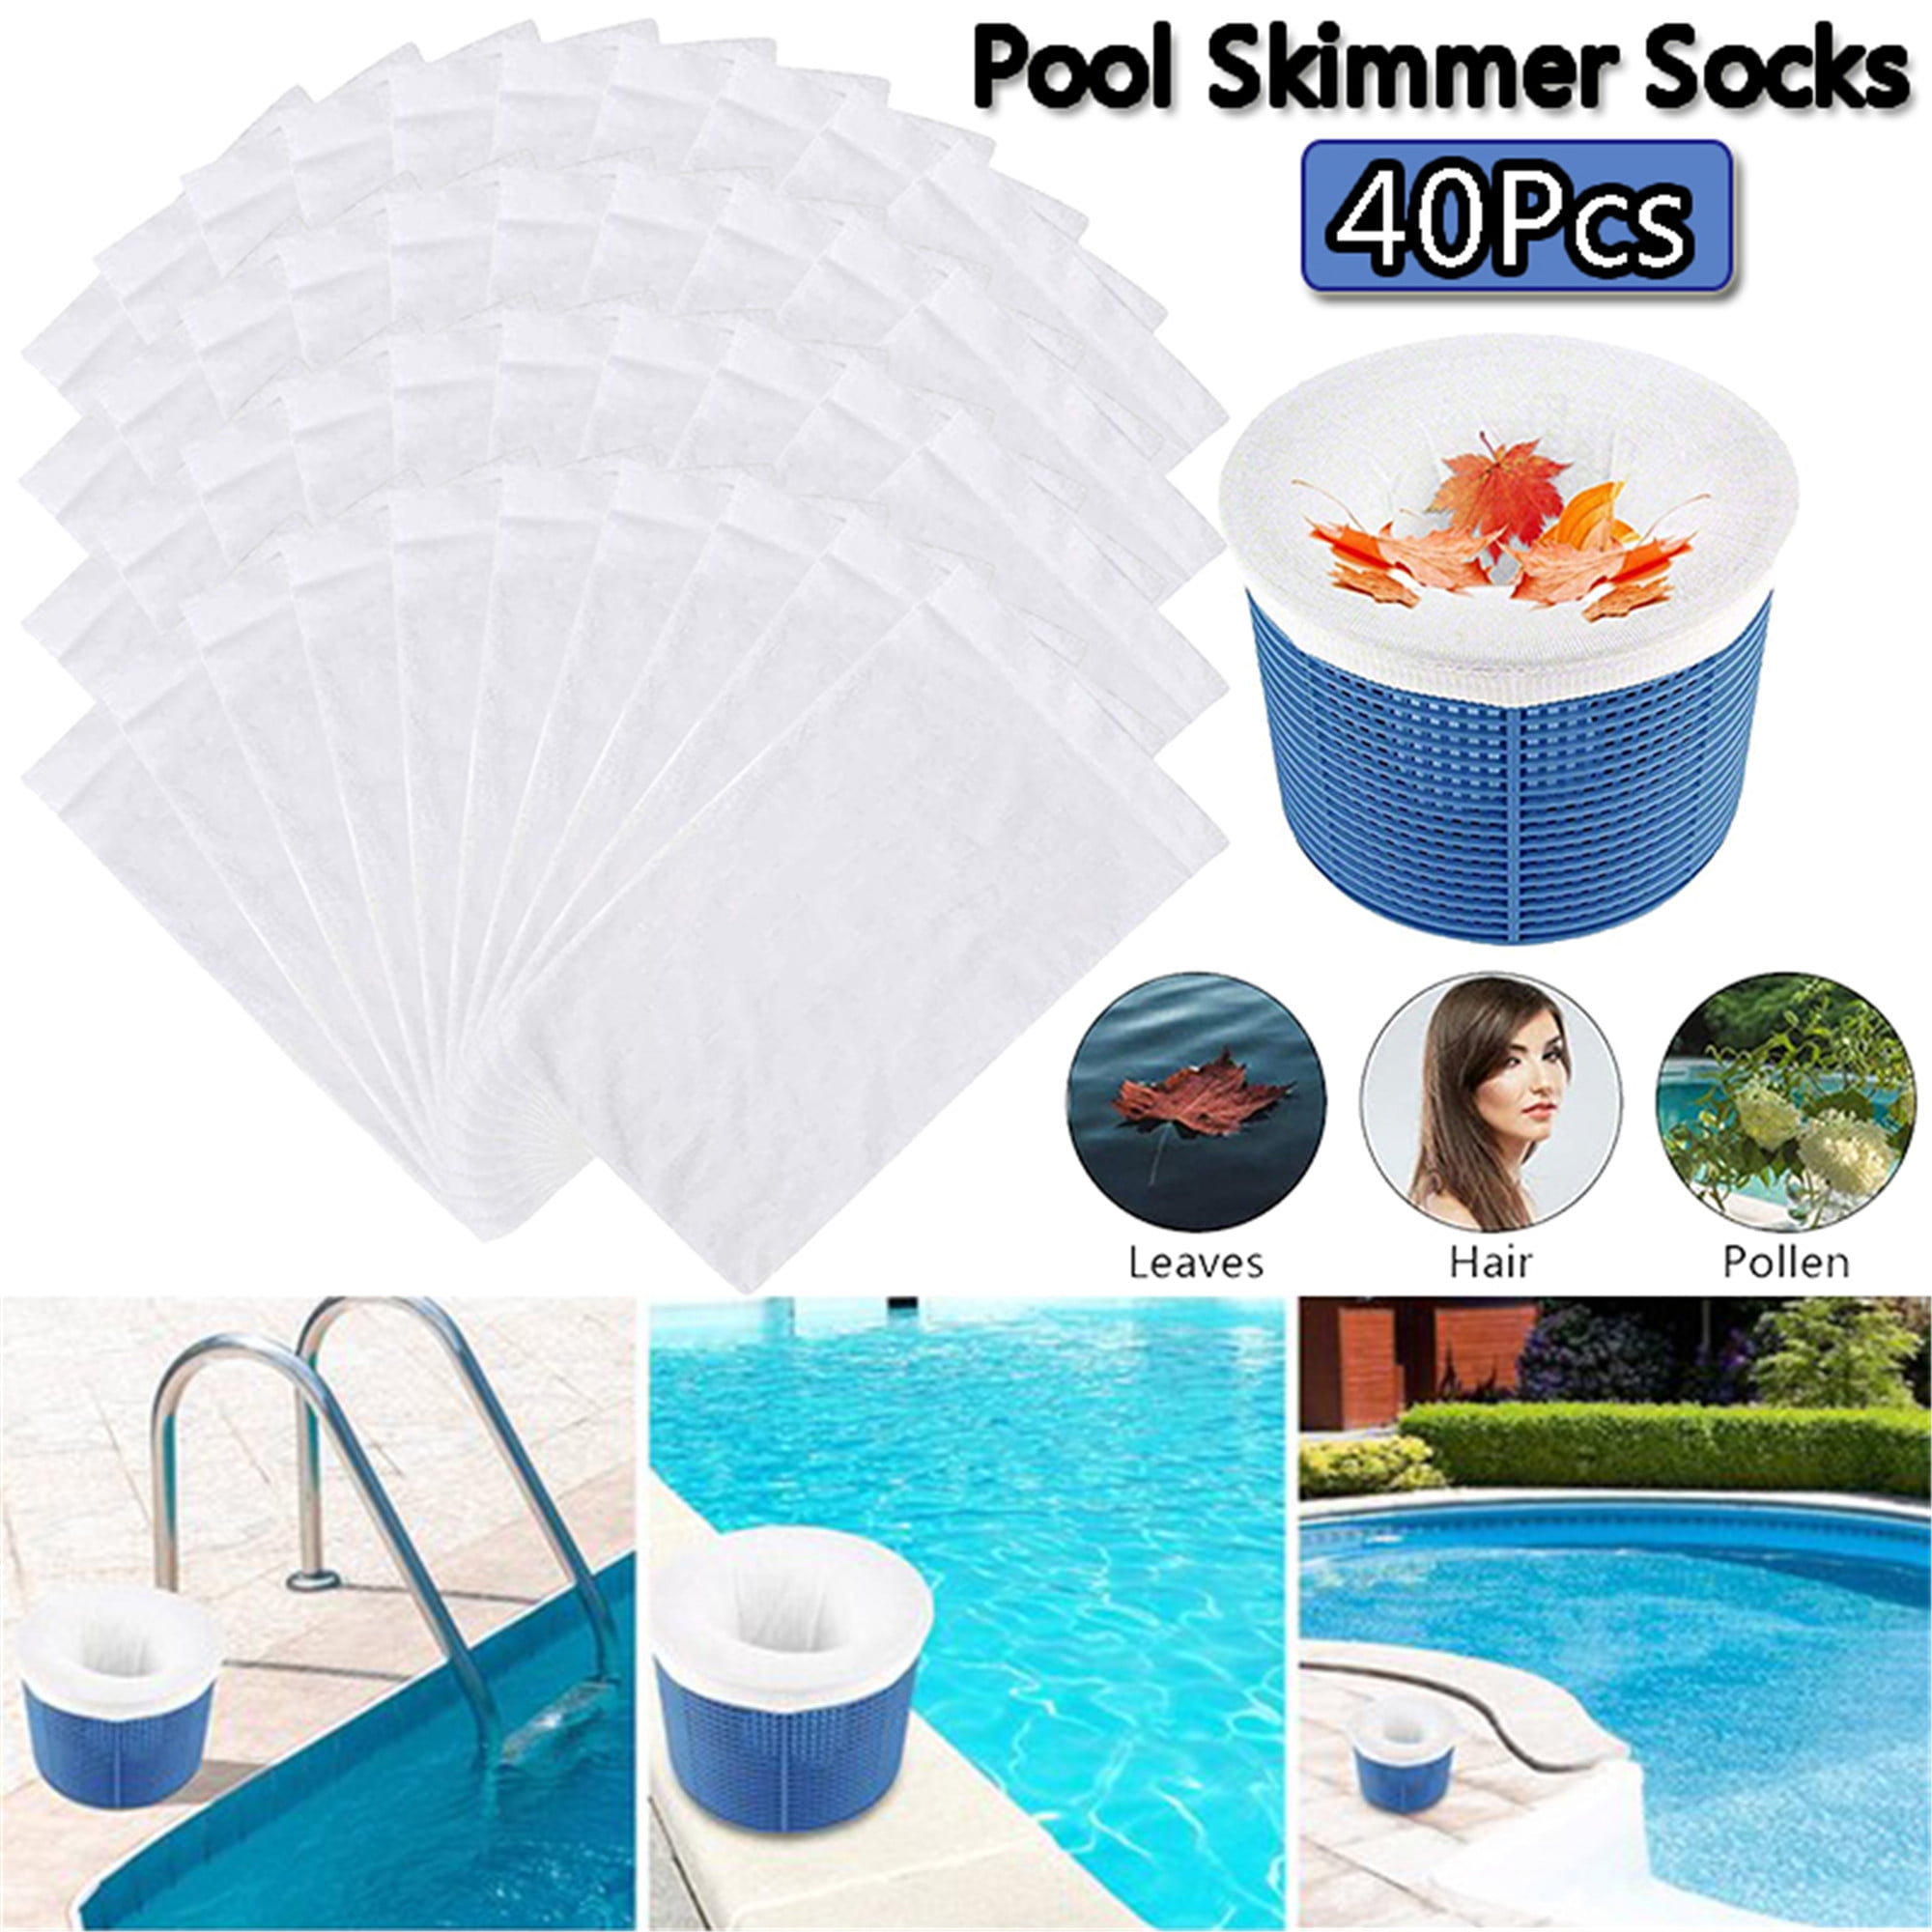 Elbourn 5 Pack Pool Skimmer Socks, Pool Filter Saver Socks Net